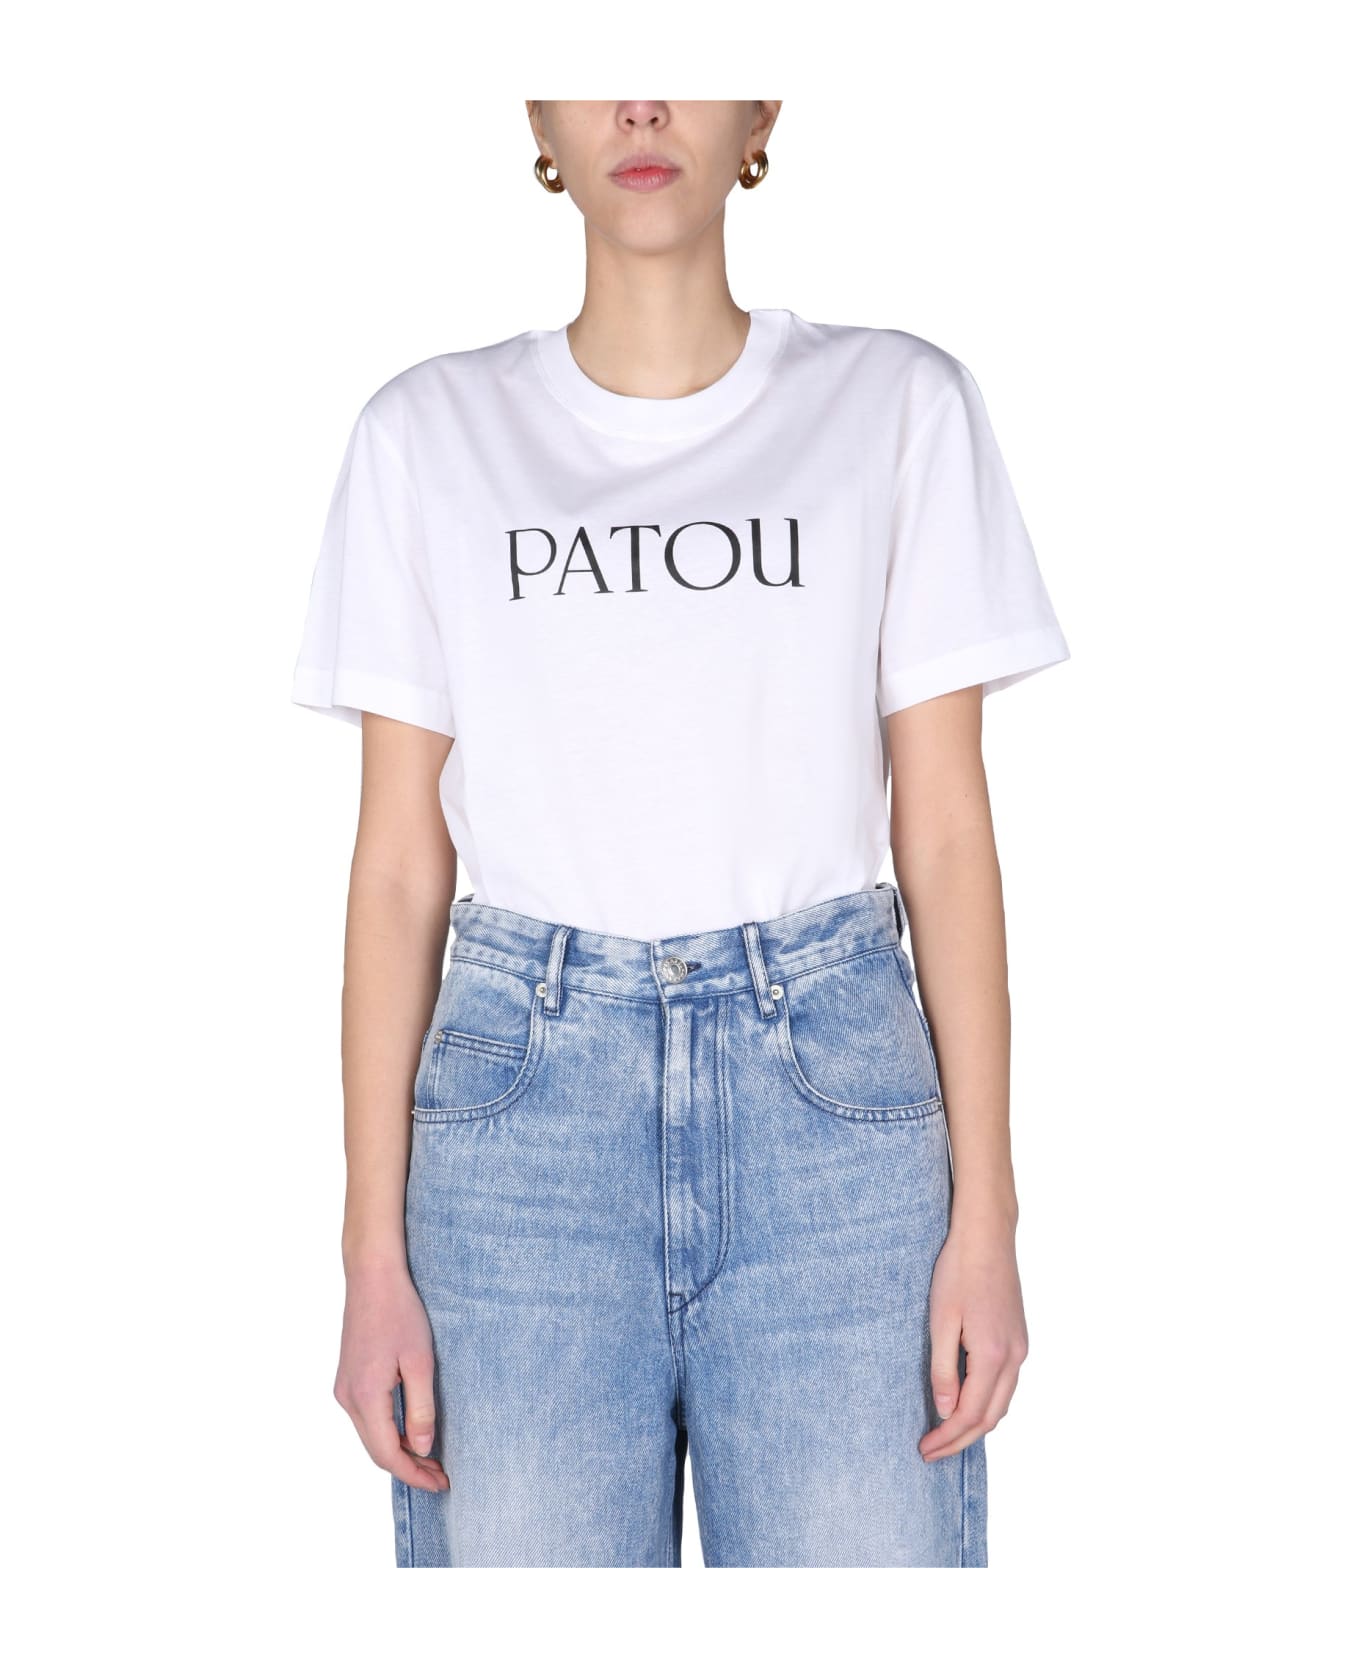 Patou Logo Print T-shirt - WHITE Tシャツ